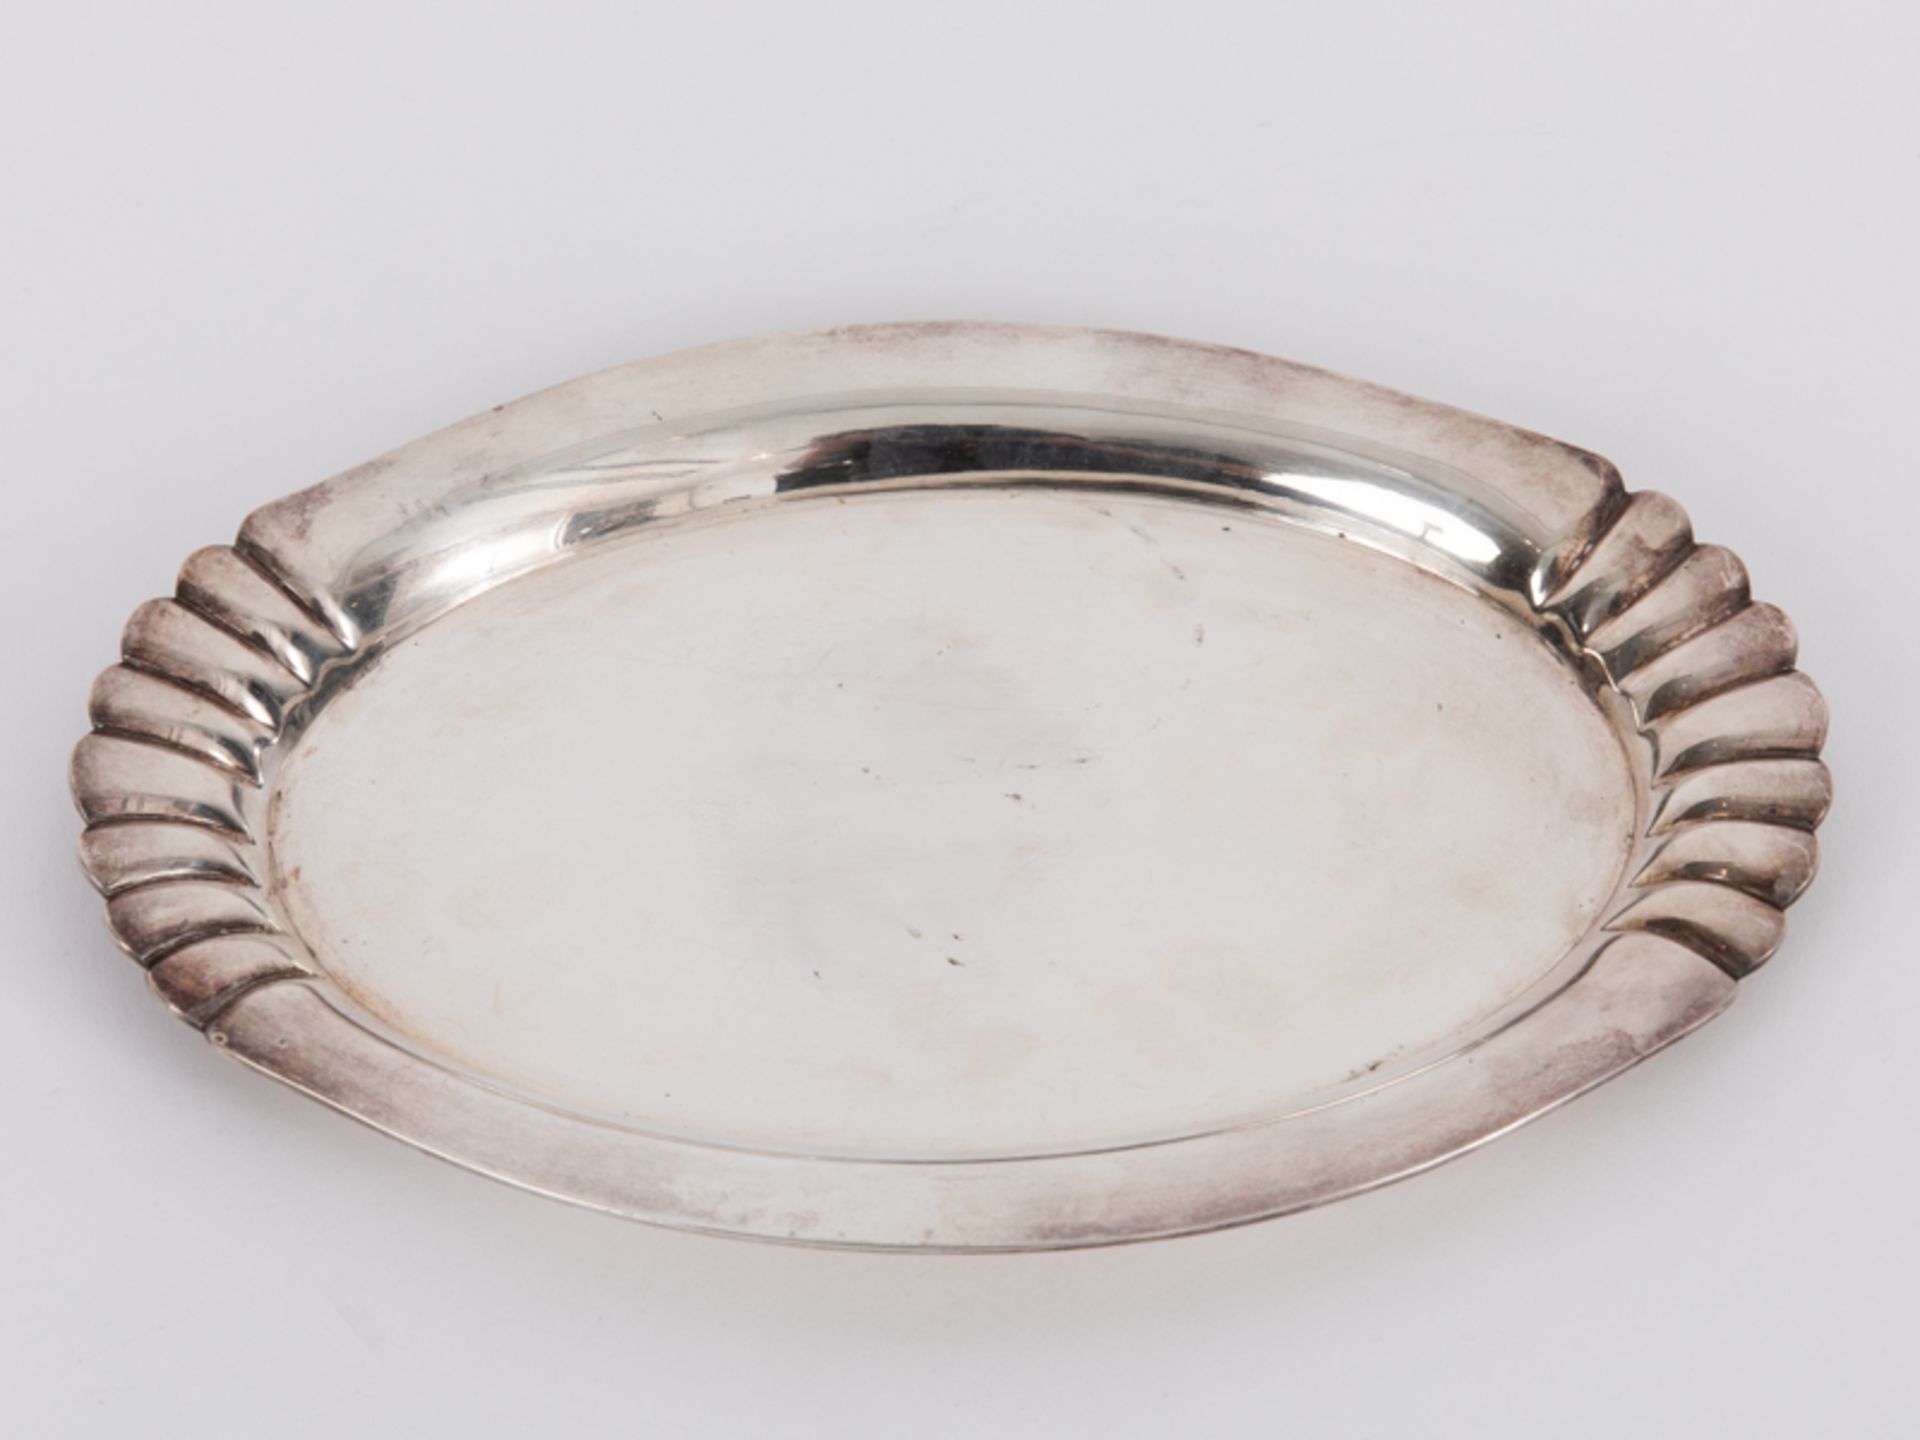 Kleines Tablett, deutsch, 20. Jh. br800/-Silber, ca. 250 g; Ovalform mit gerundet ansteigender